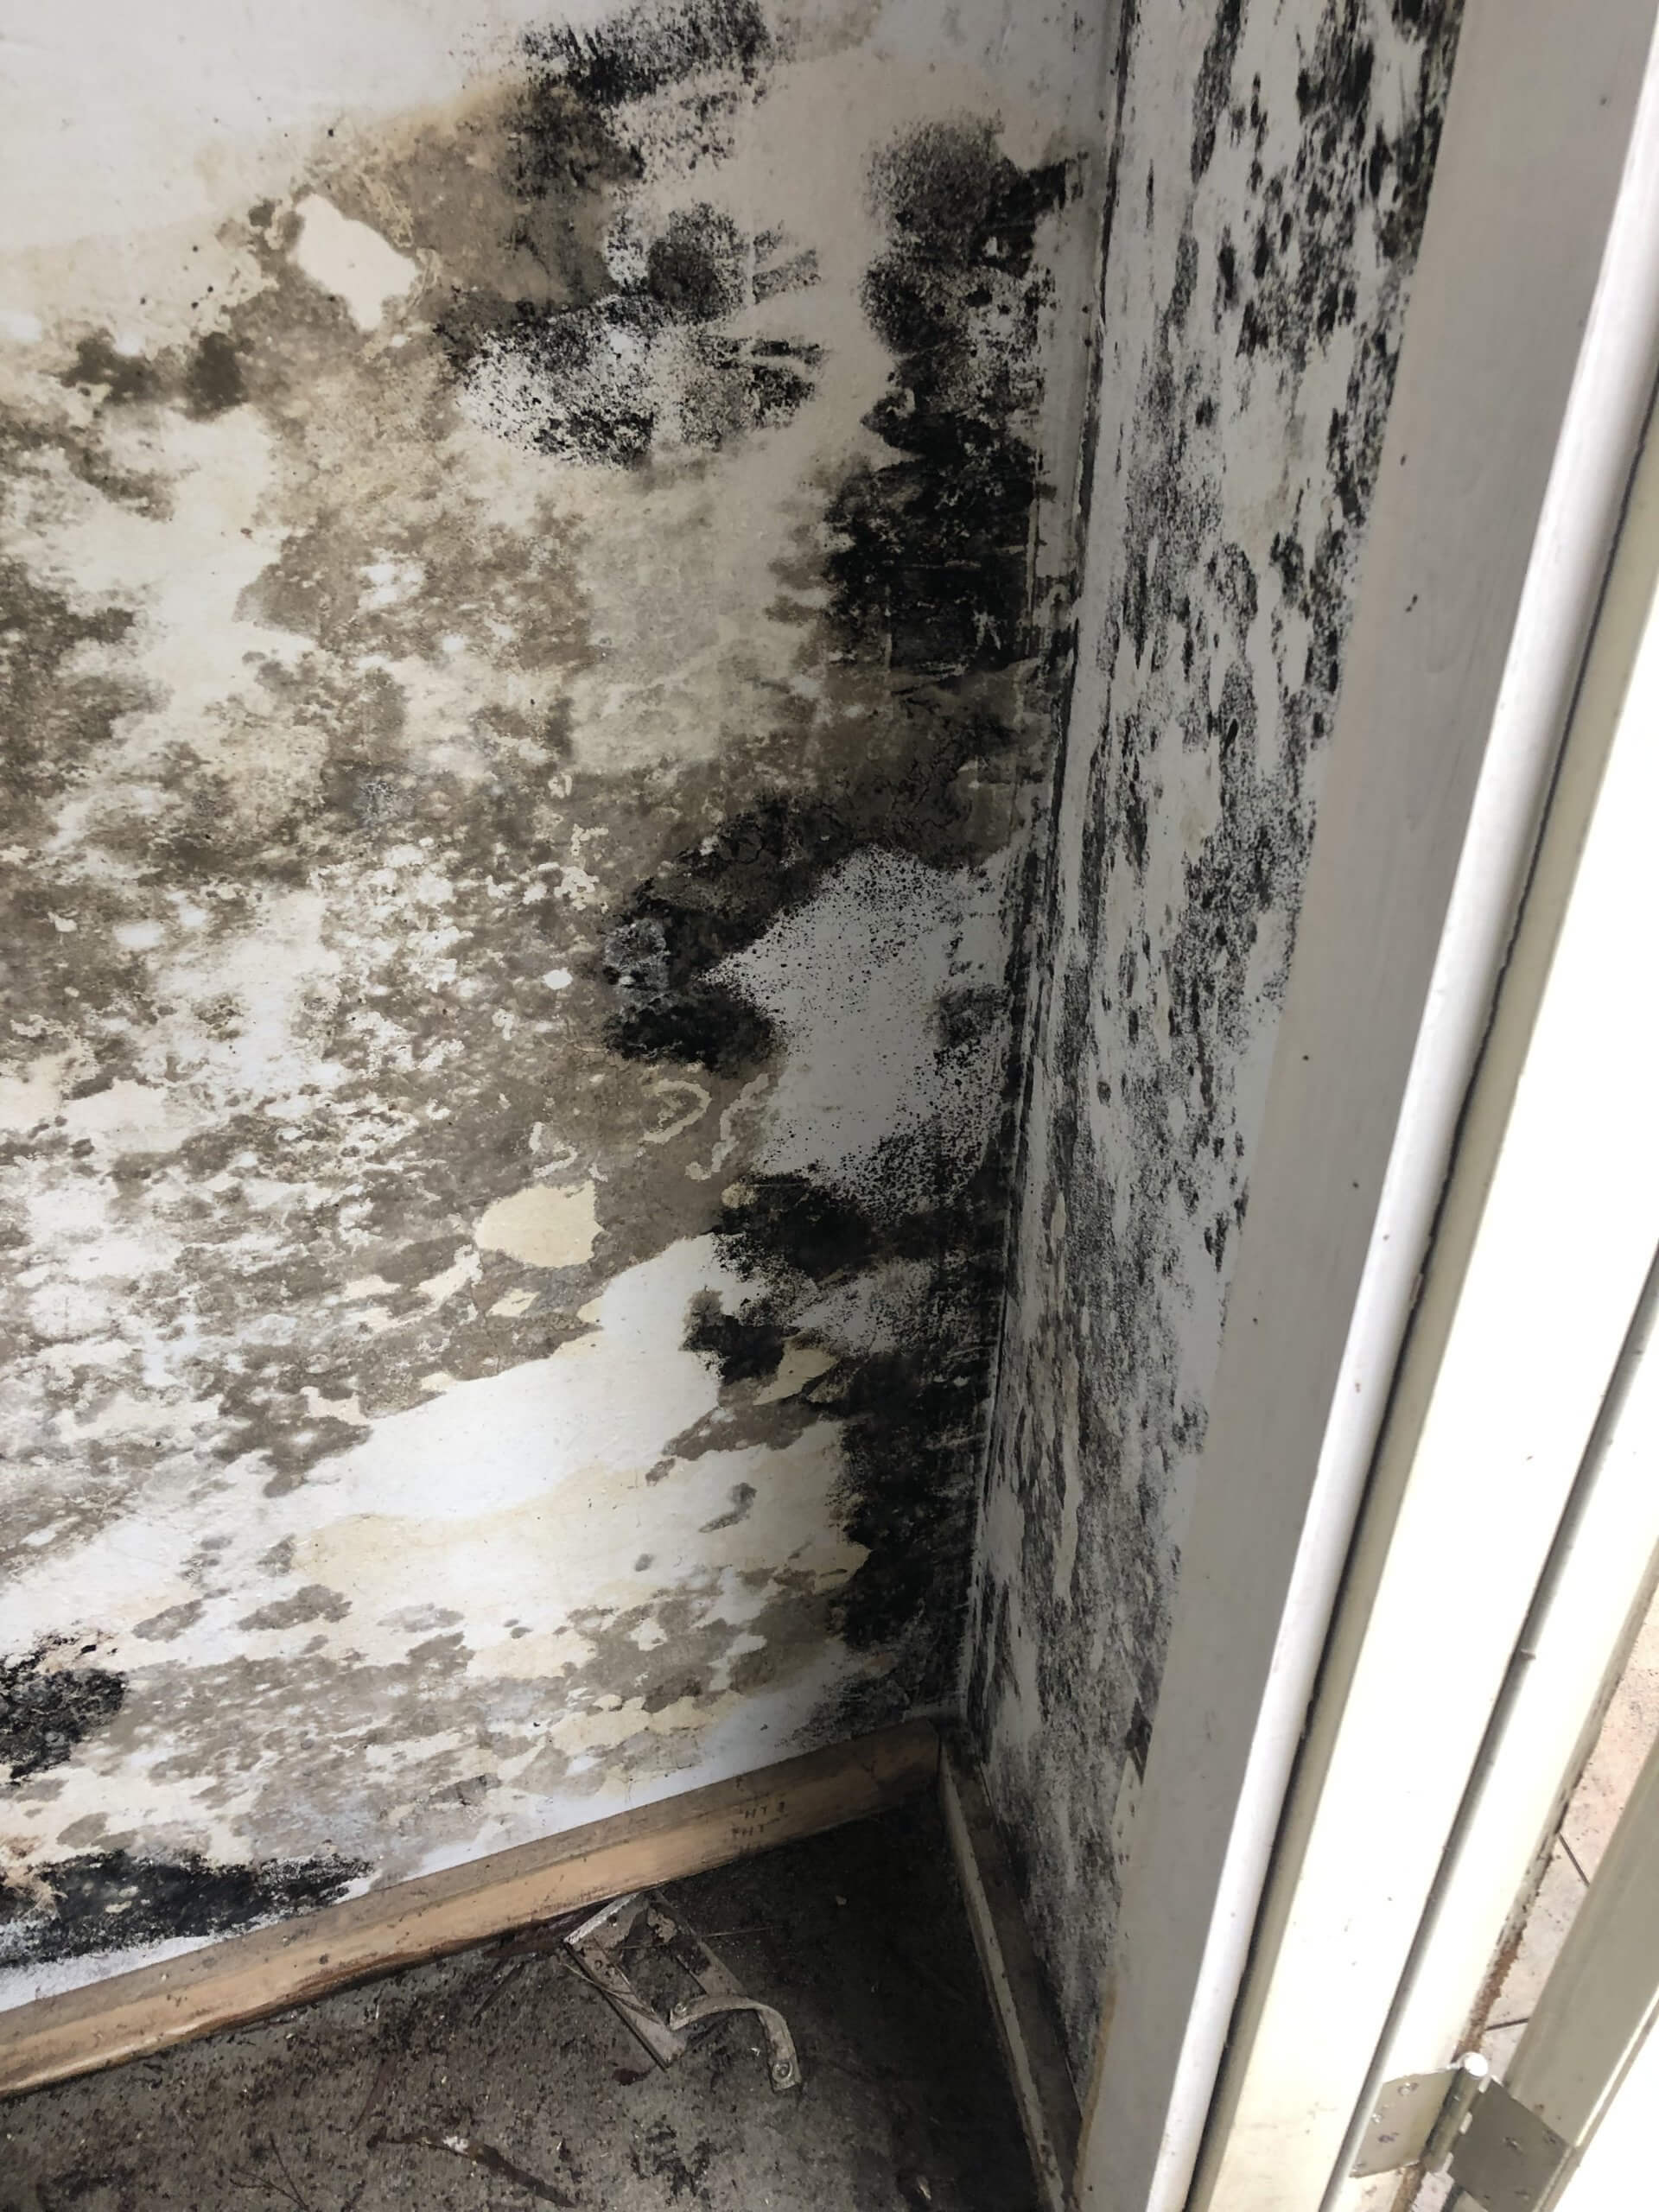 Black Mold Under My Sink – Is It Dangerous?